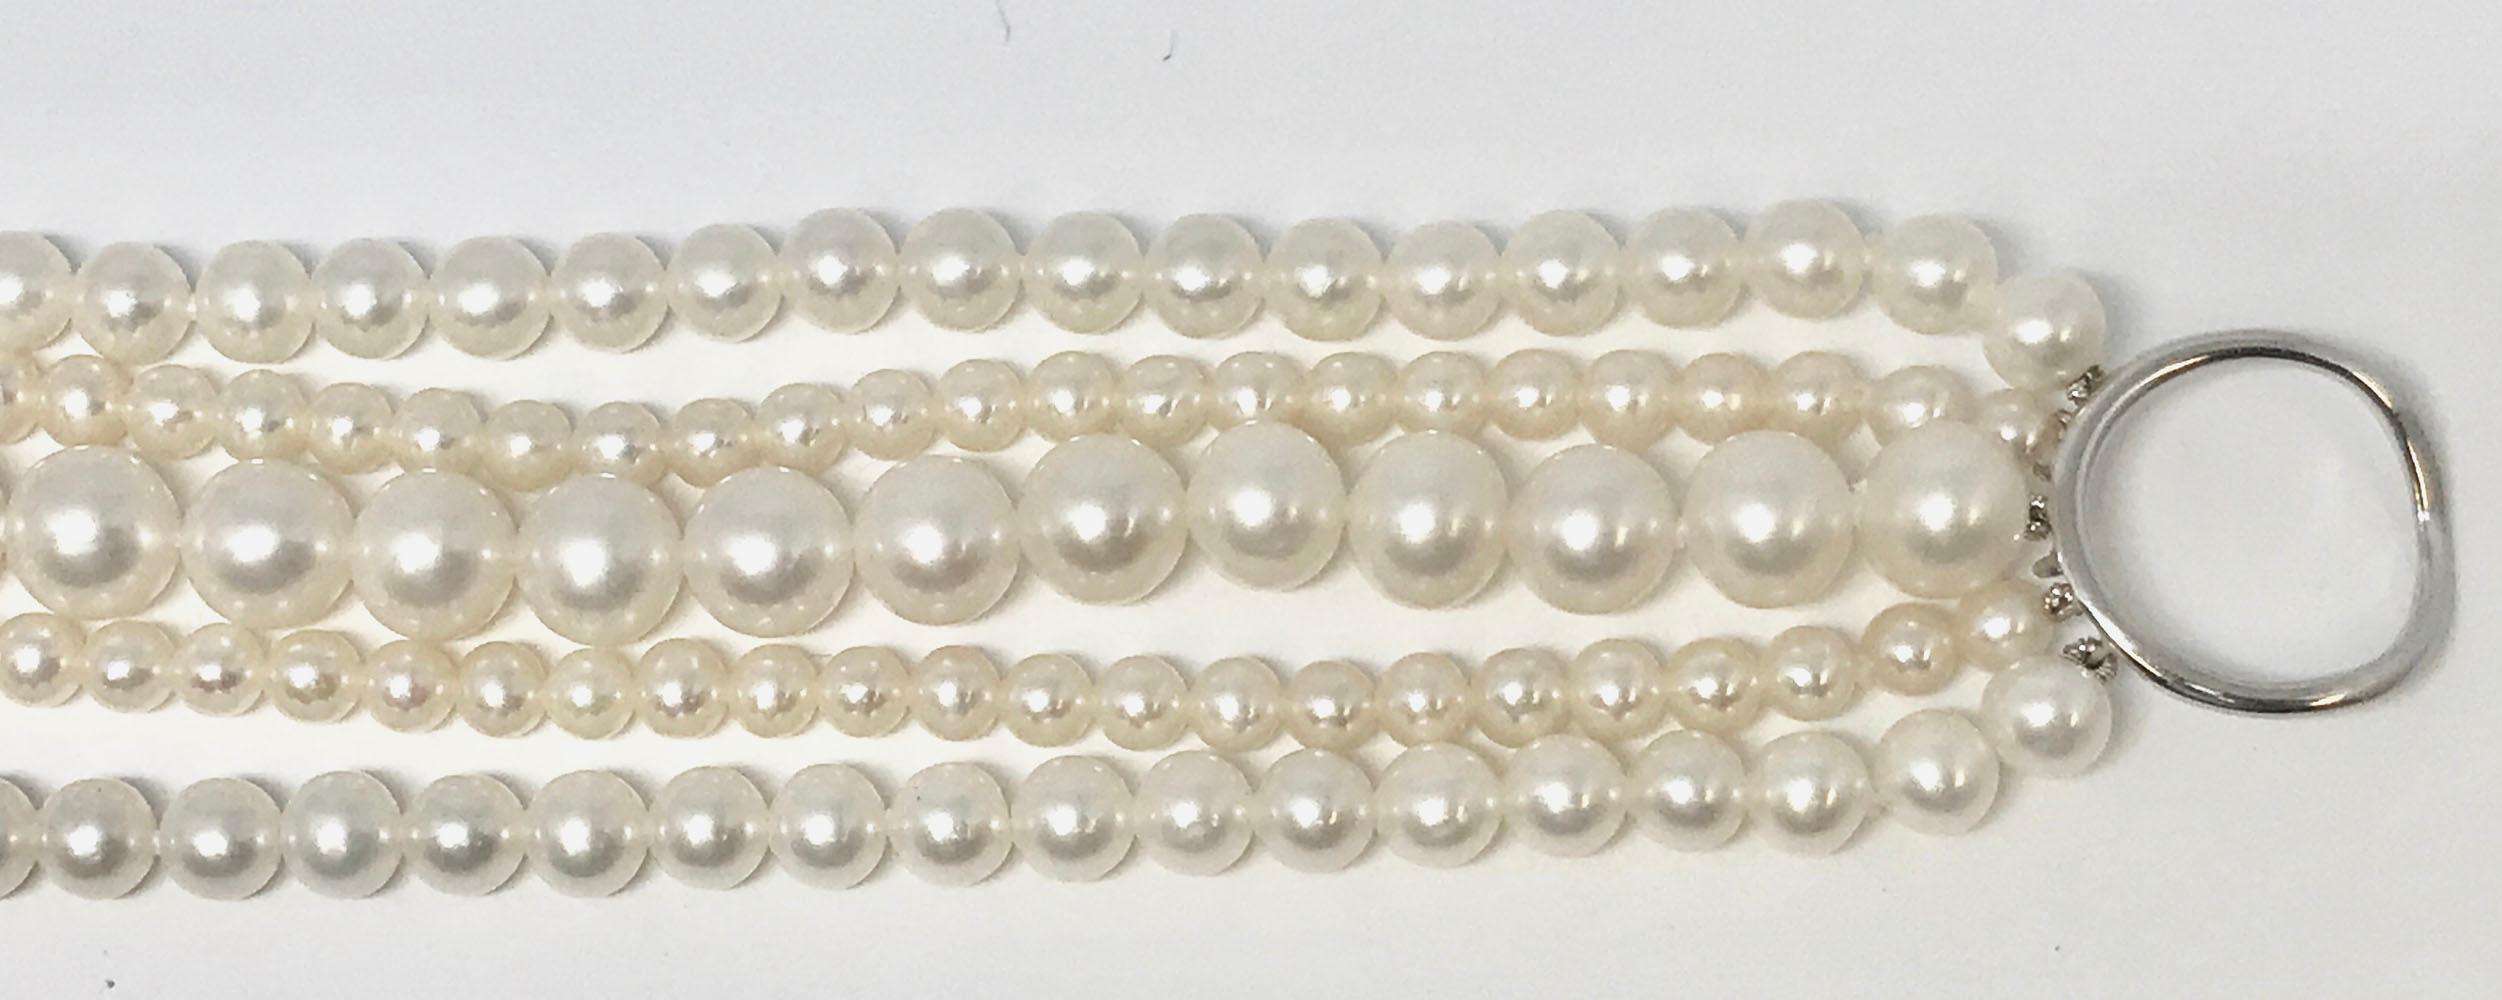 Schöne Süßwasserkultur-Perlen-Torsade/Tweed-Halskette, 17